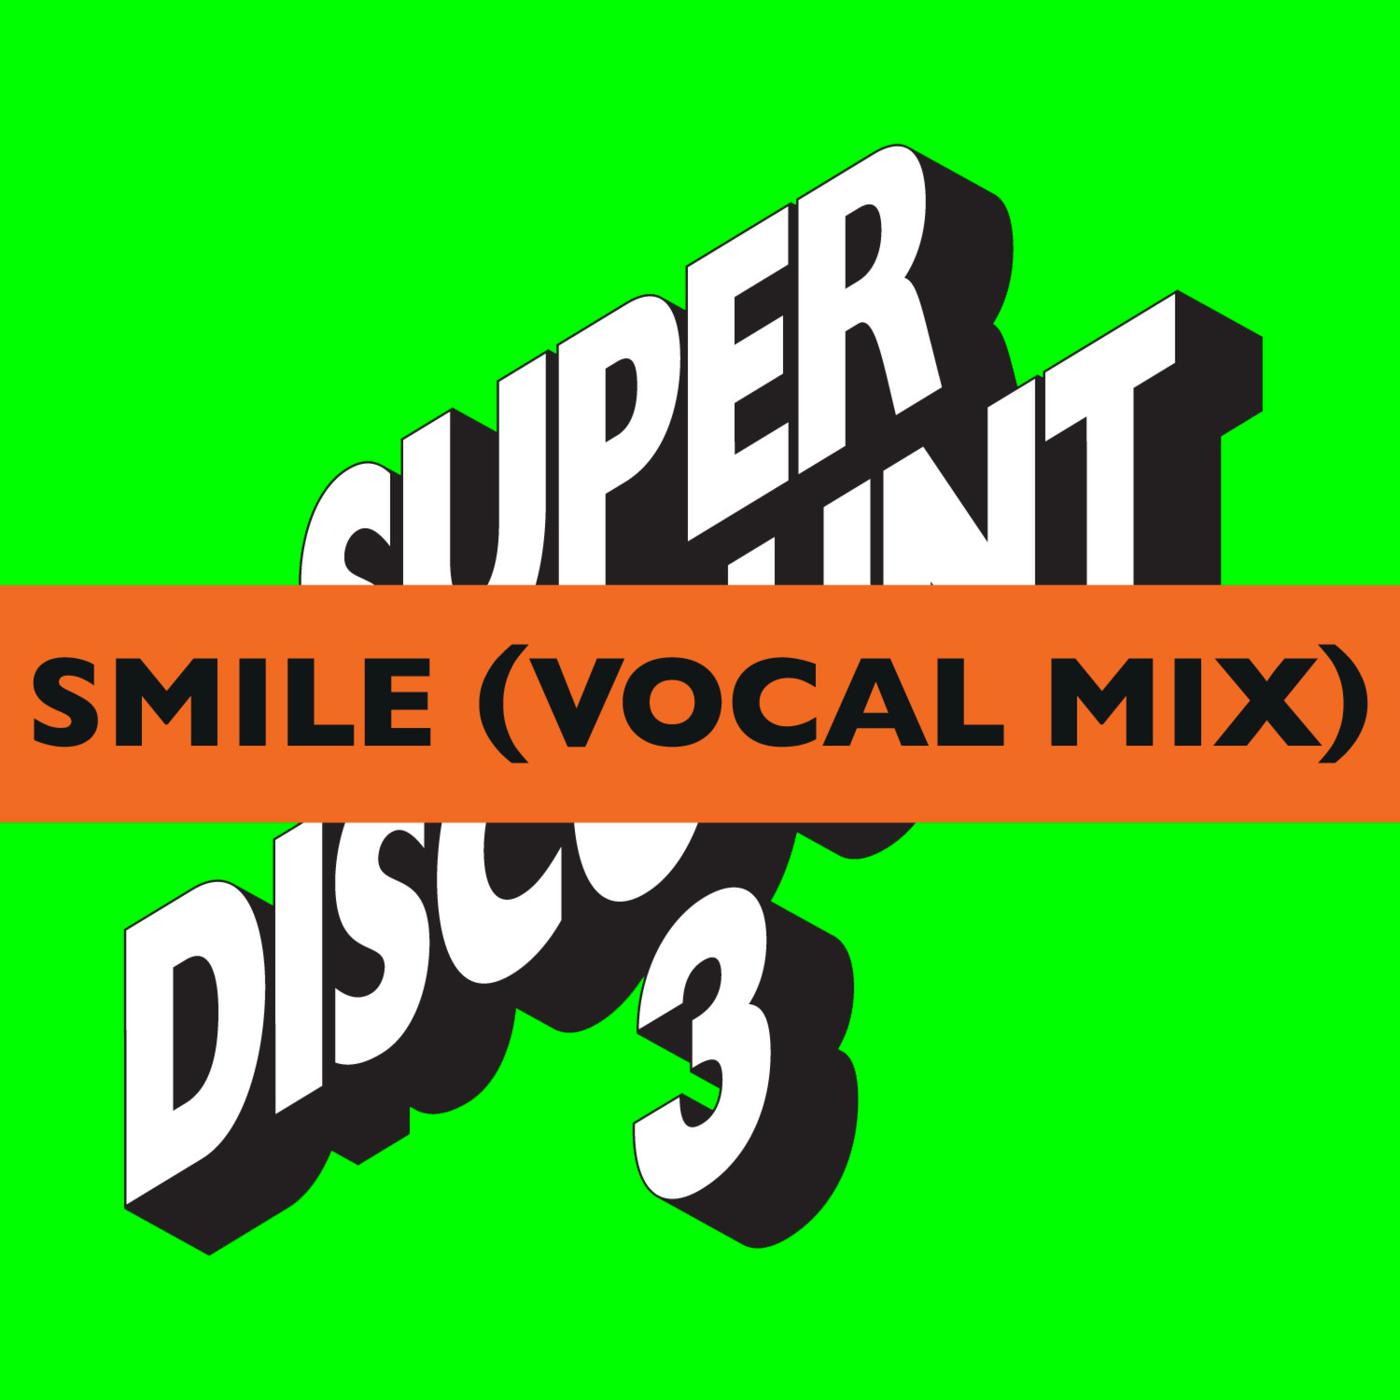 Etienne De Crécy - Smile (Vocal Mix)